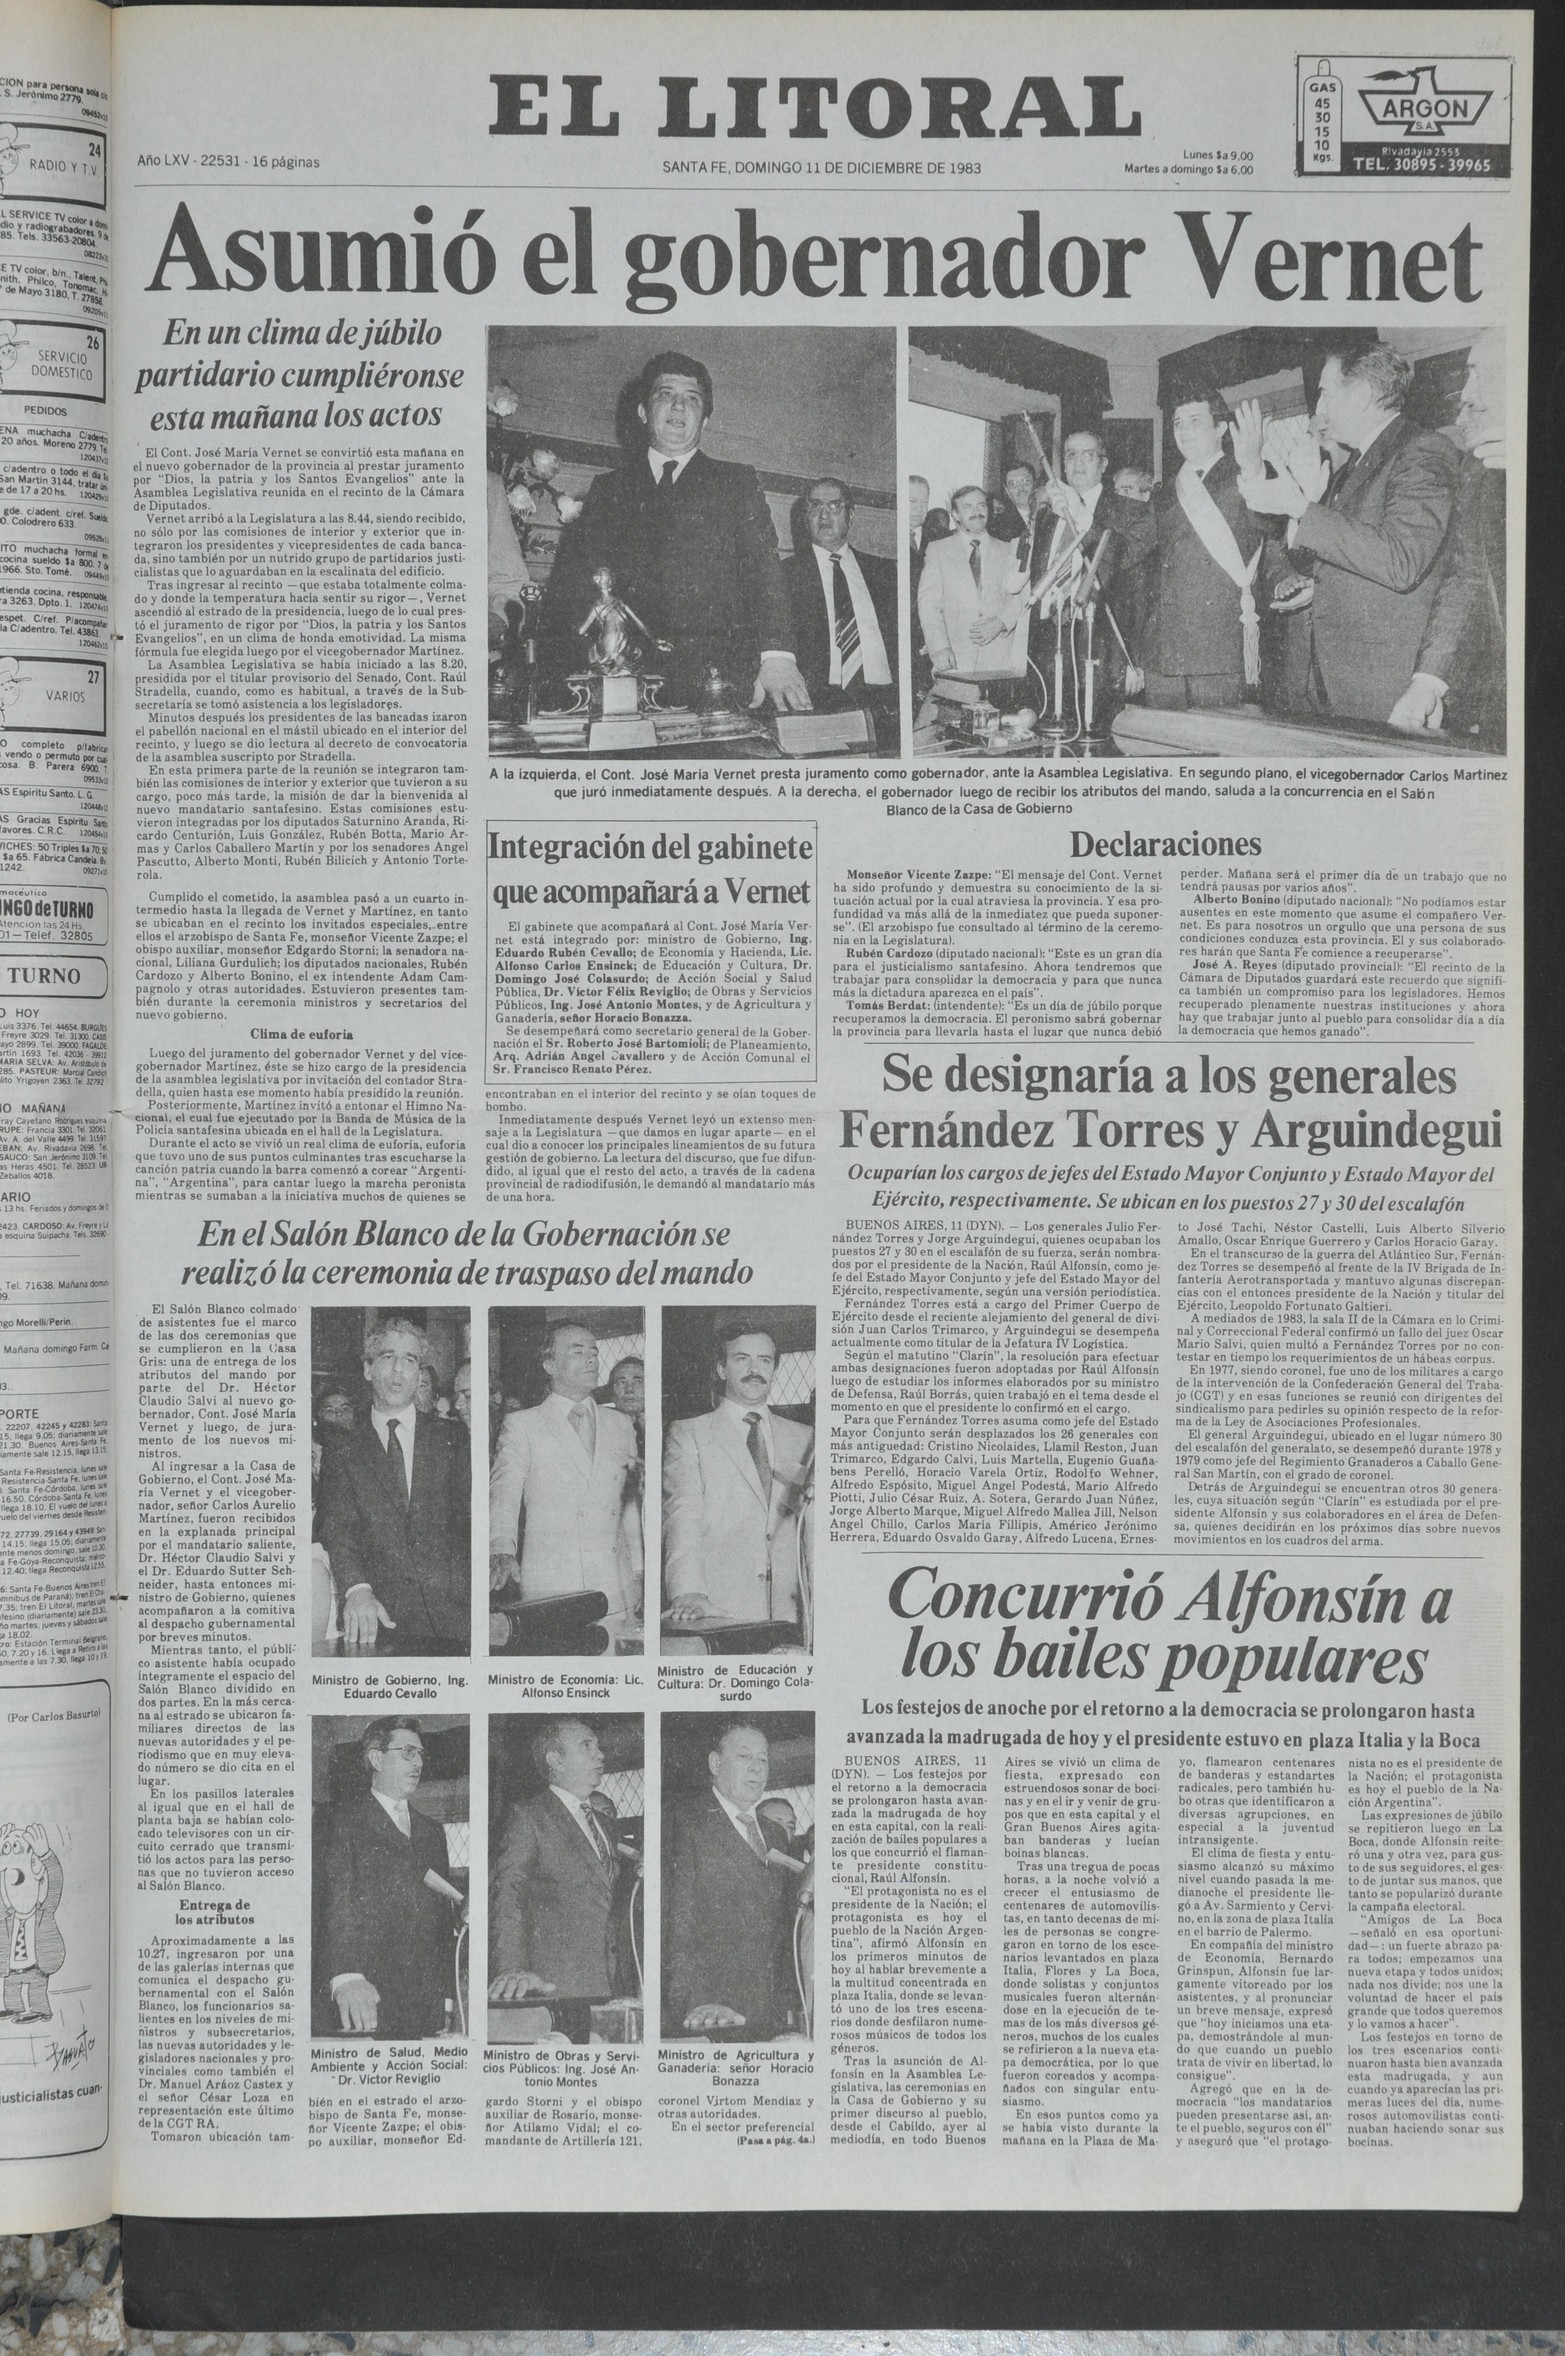  Ejemplar de El Litoral, edición del 11 de diciembre de 1983.